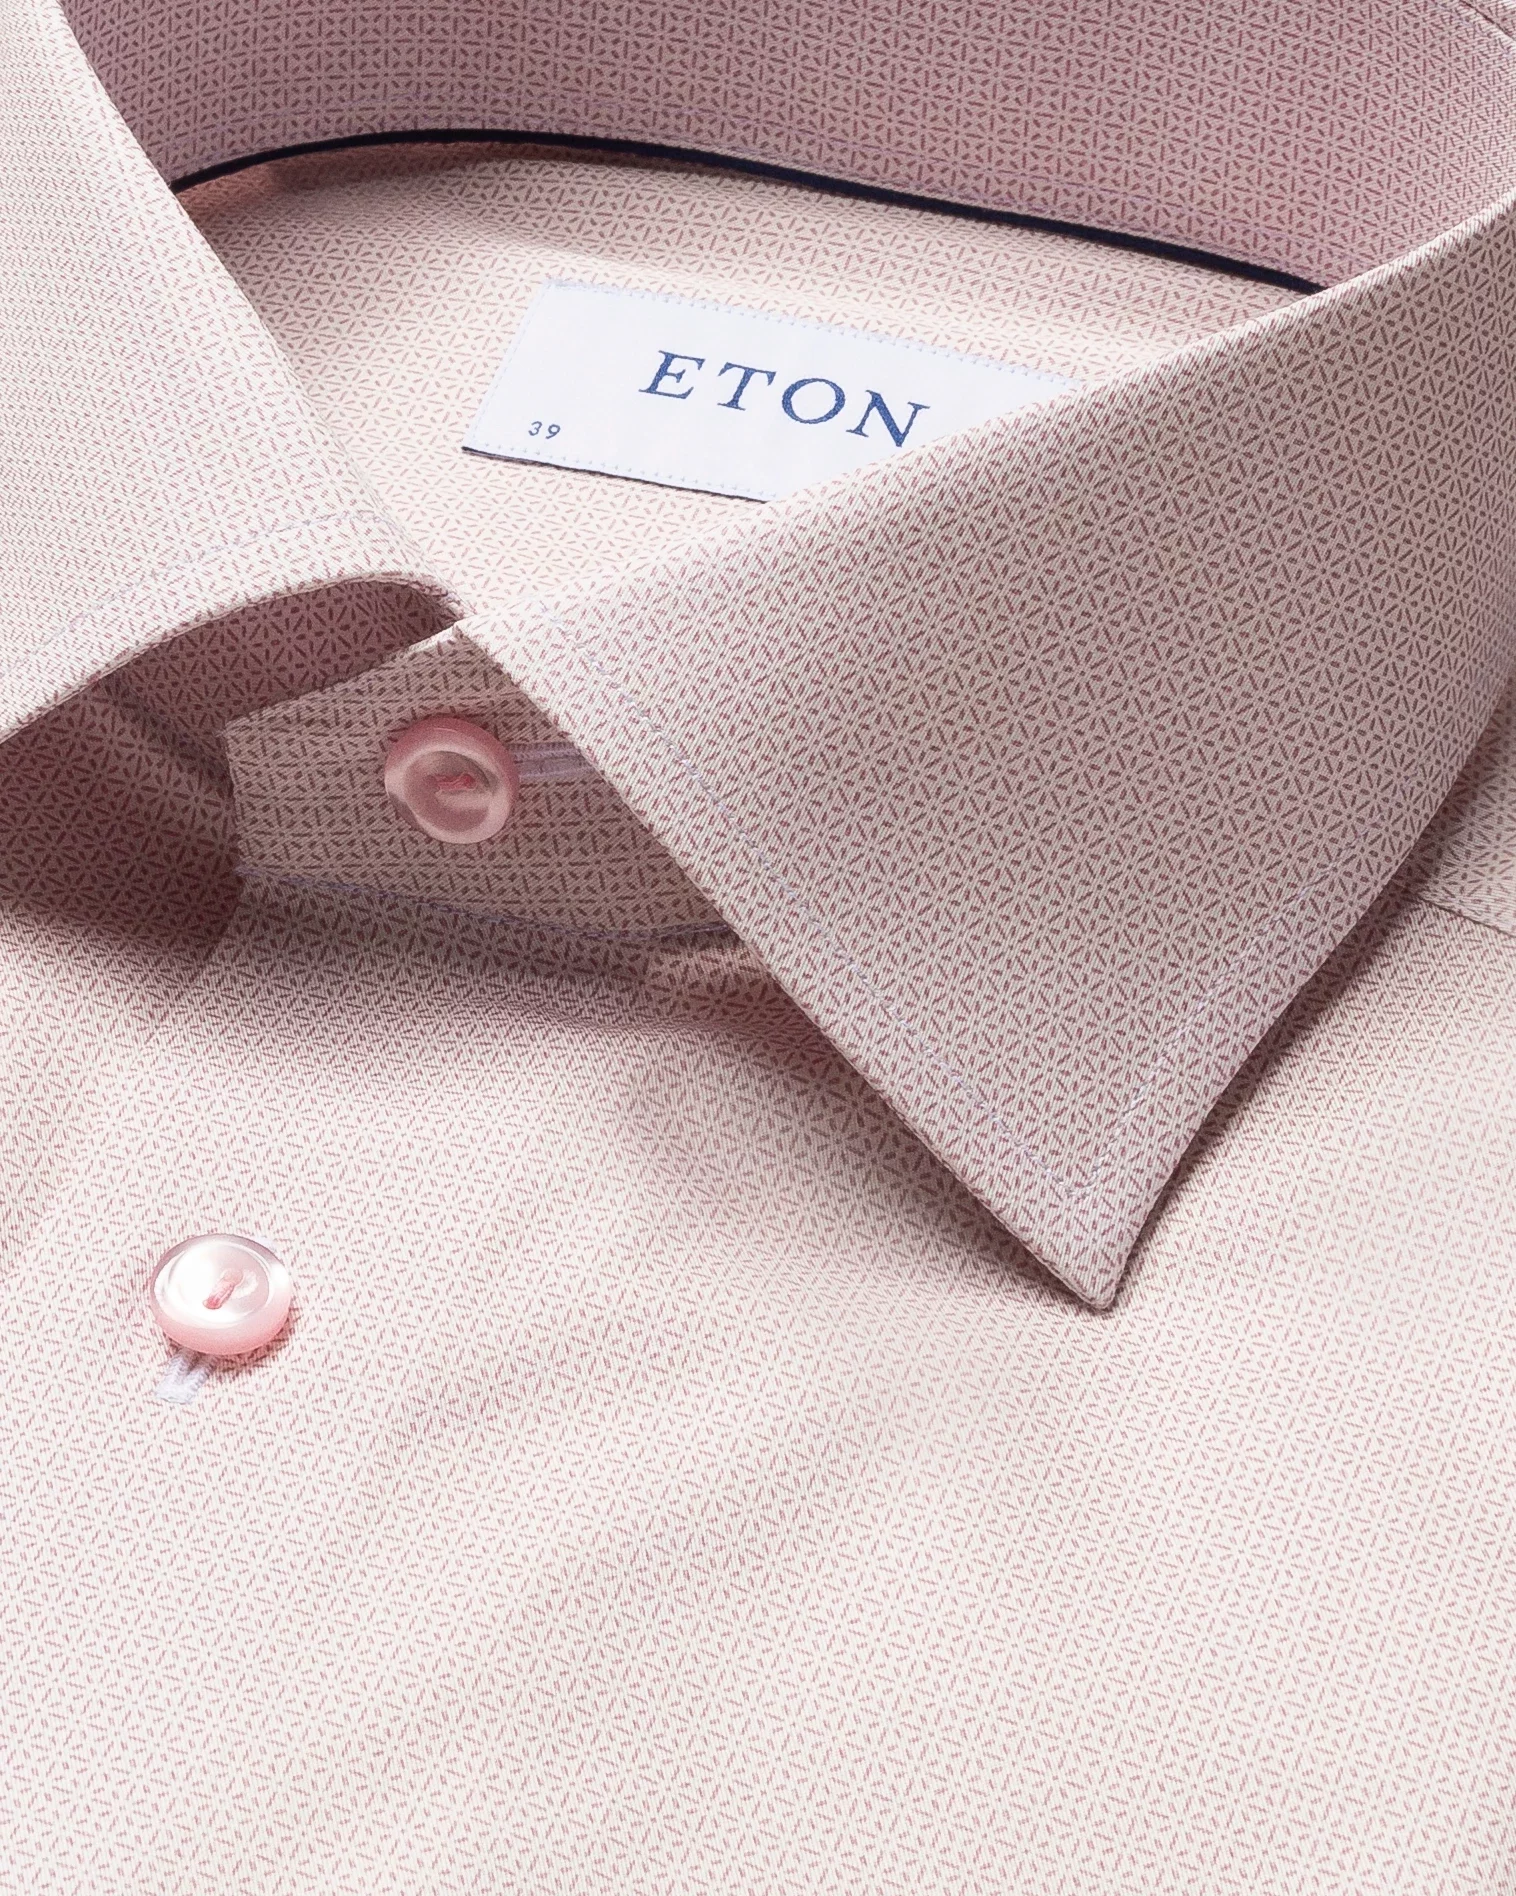 Eton - pink micro pattern fine twill shirt